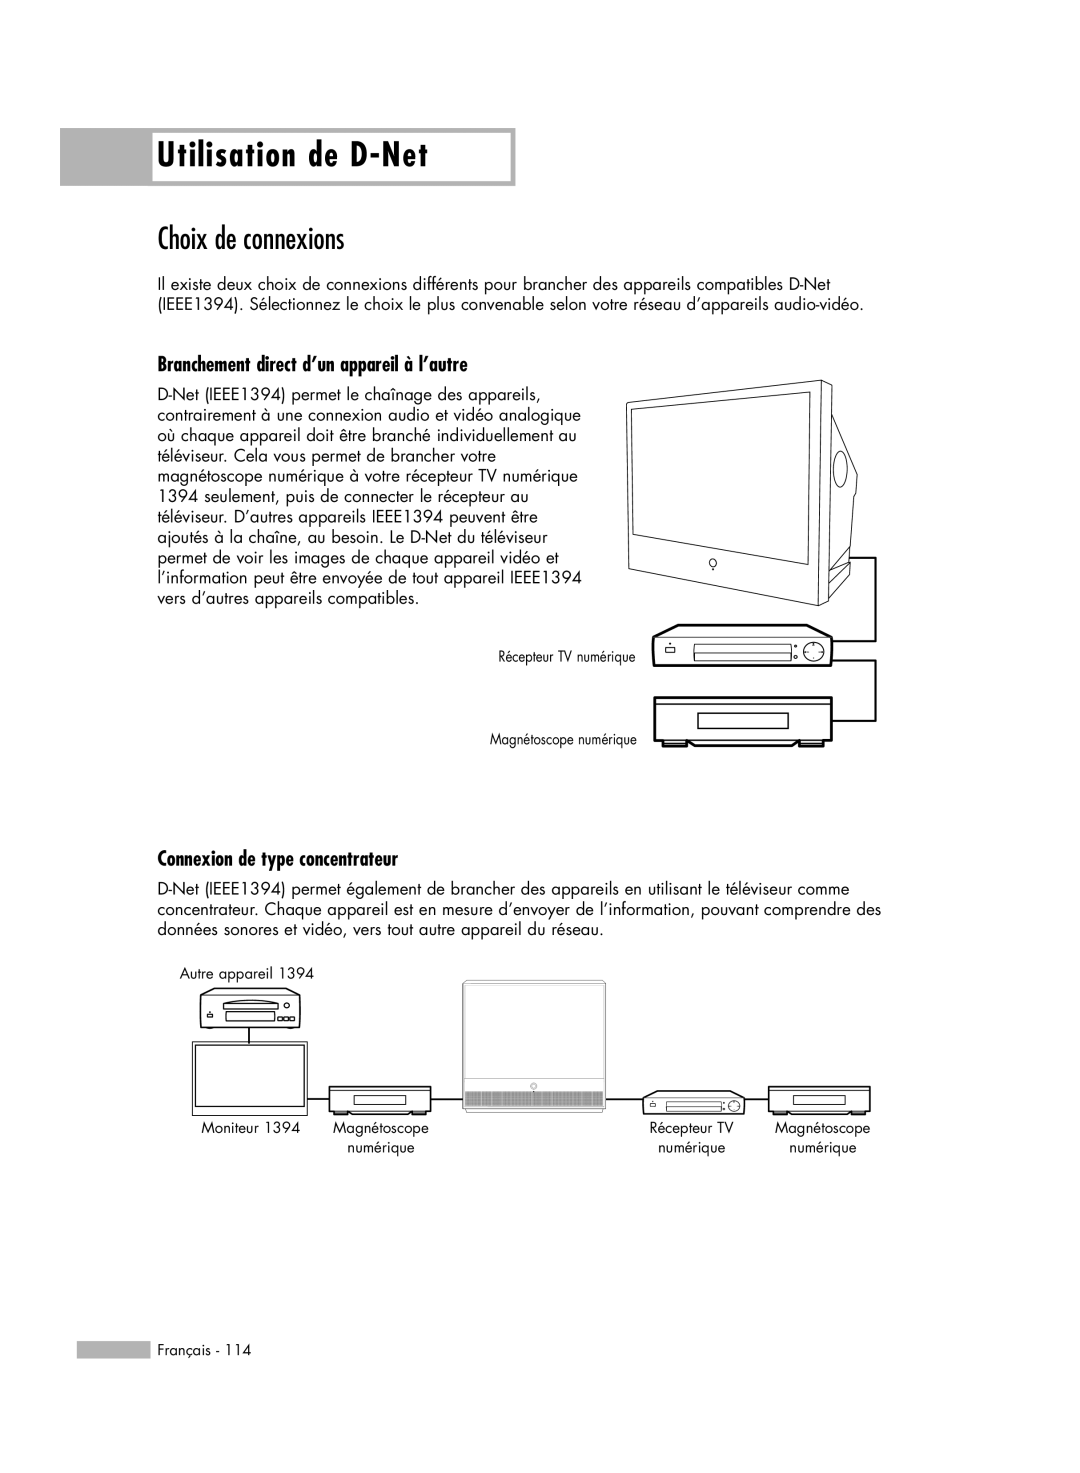 Samsung HL-R5678W manual Choix de connexions, Branchement direct d’un appareil à l’autre, Connexion de type concentrateur 